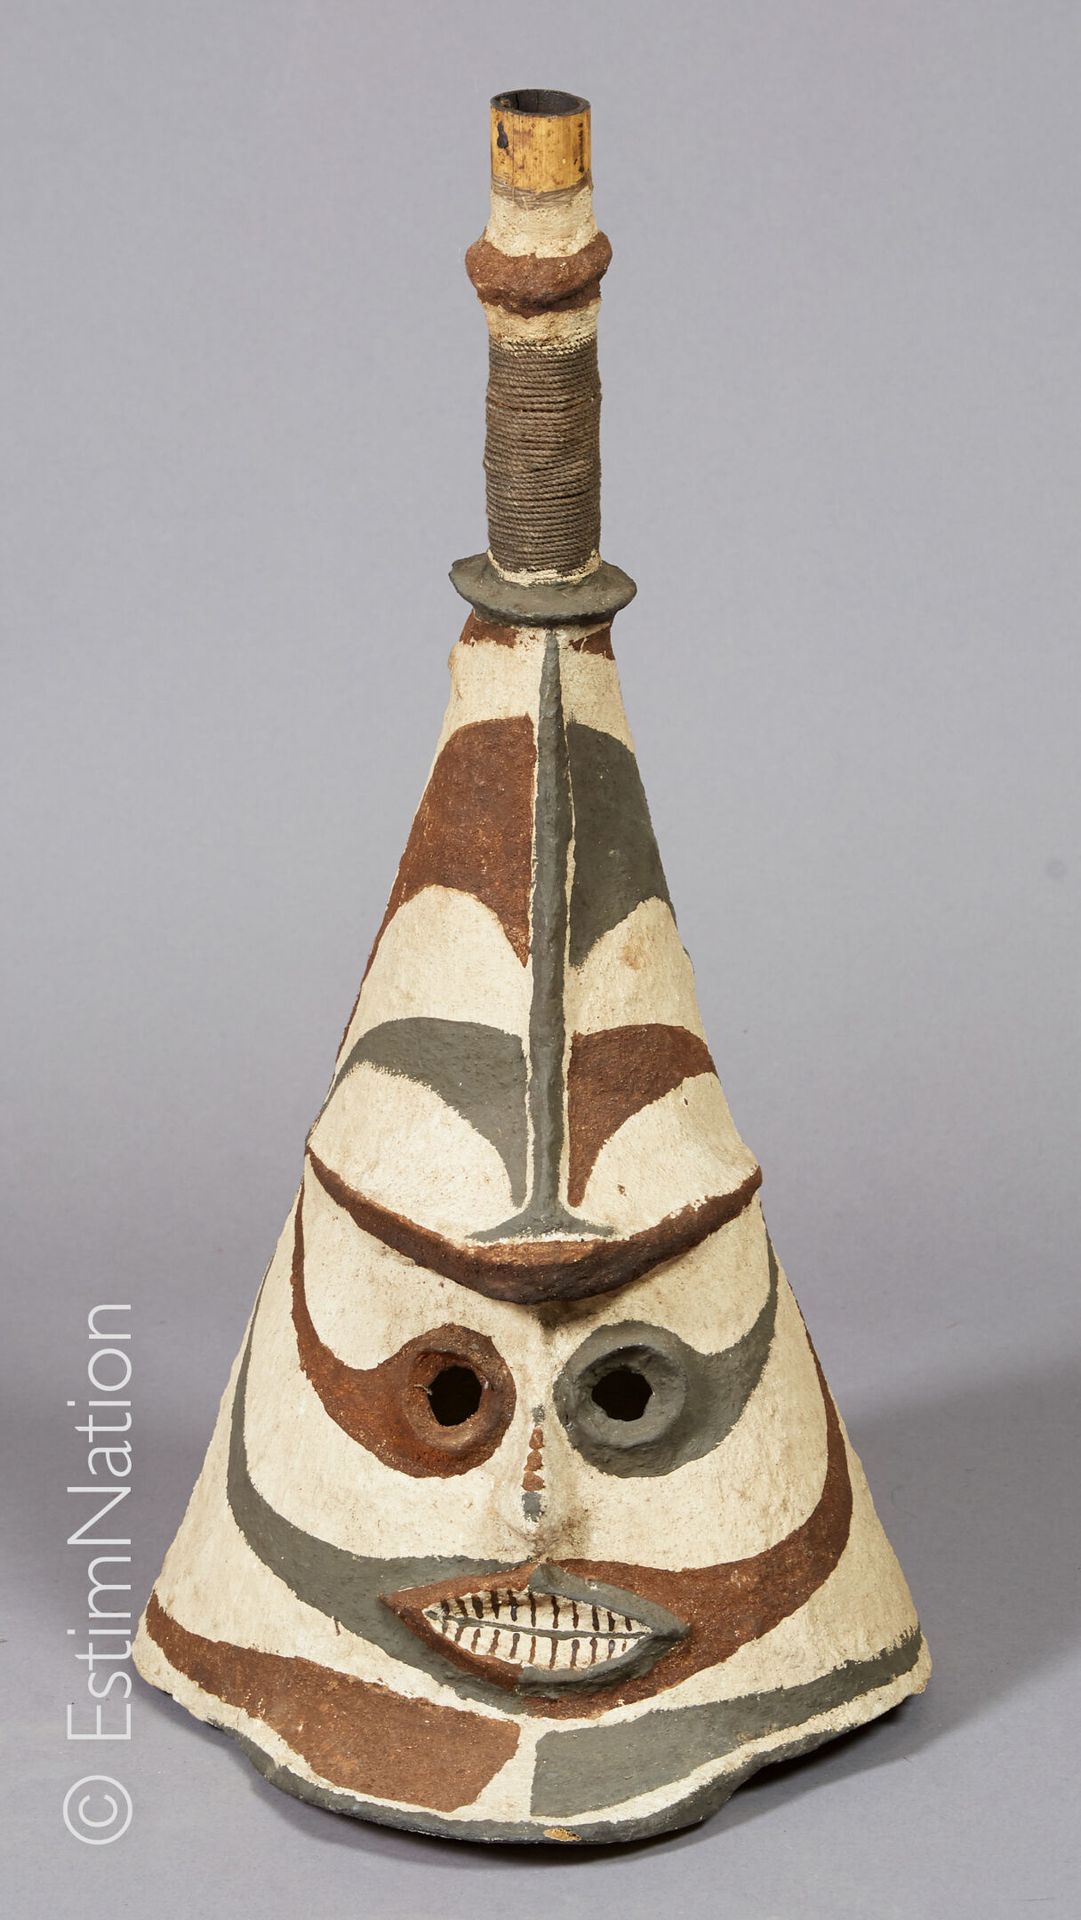 VANUATU VANUATU



Mask made of vegetable fiber, earth, natural pigments represe&hellip;